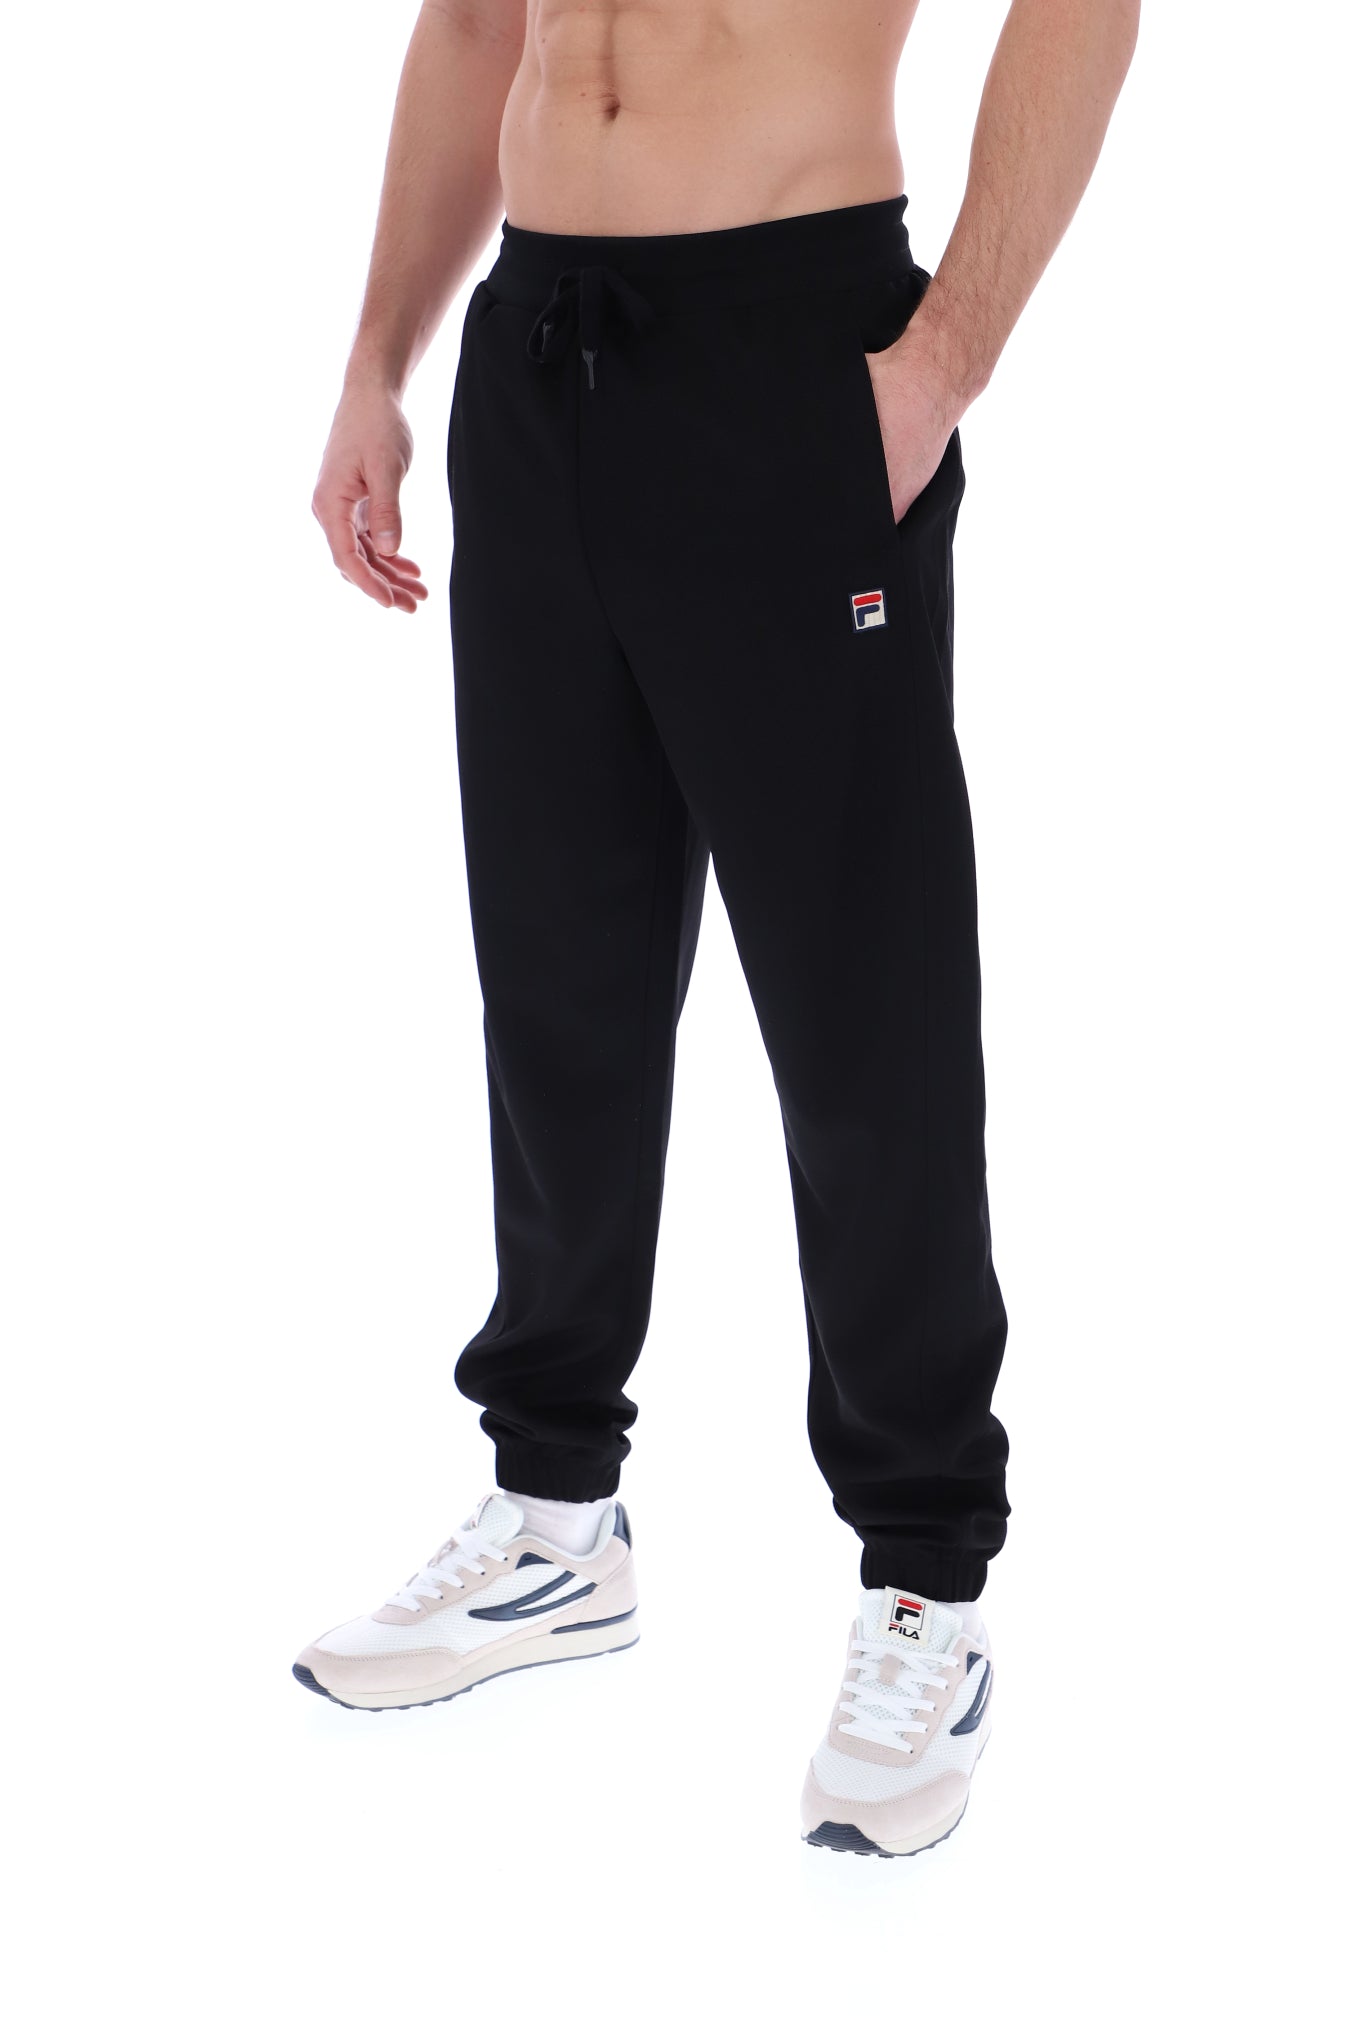 Buy Fila Black Regular Fit Joggers for Mens Online  Tata CLiQ